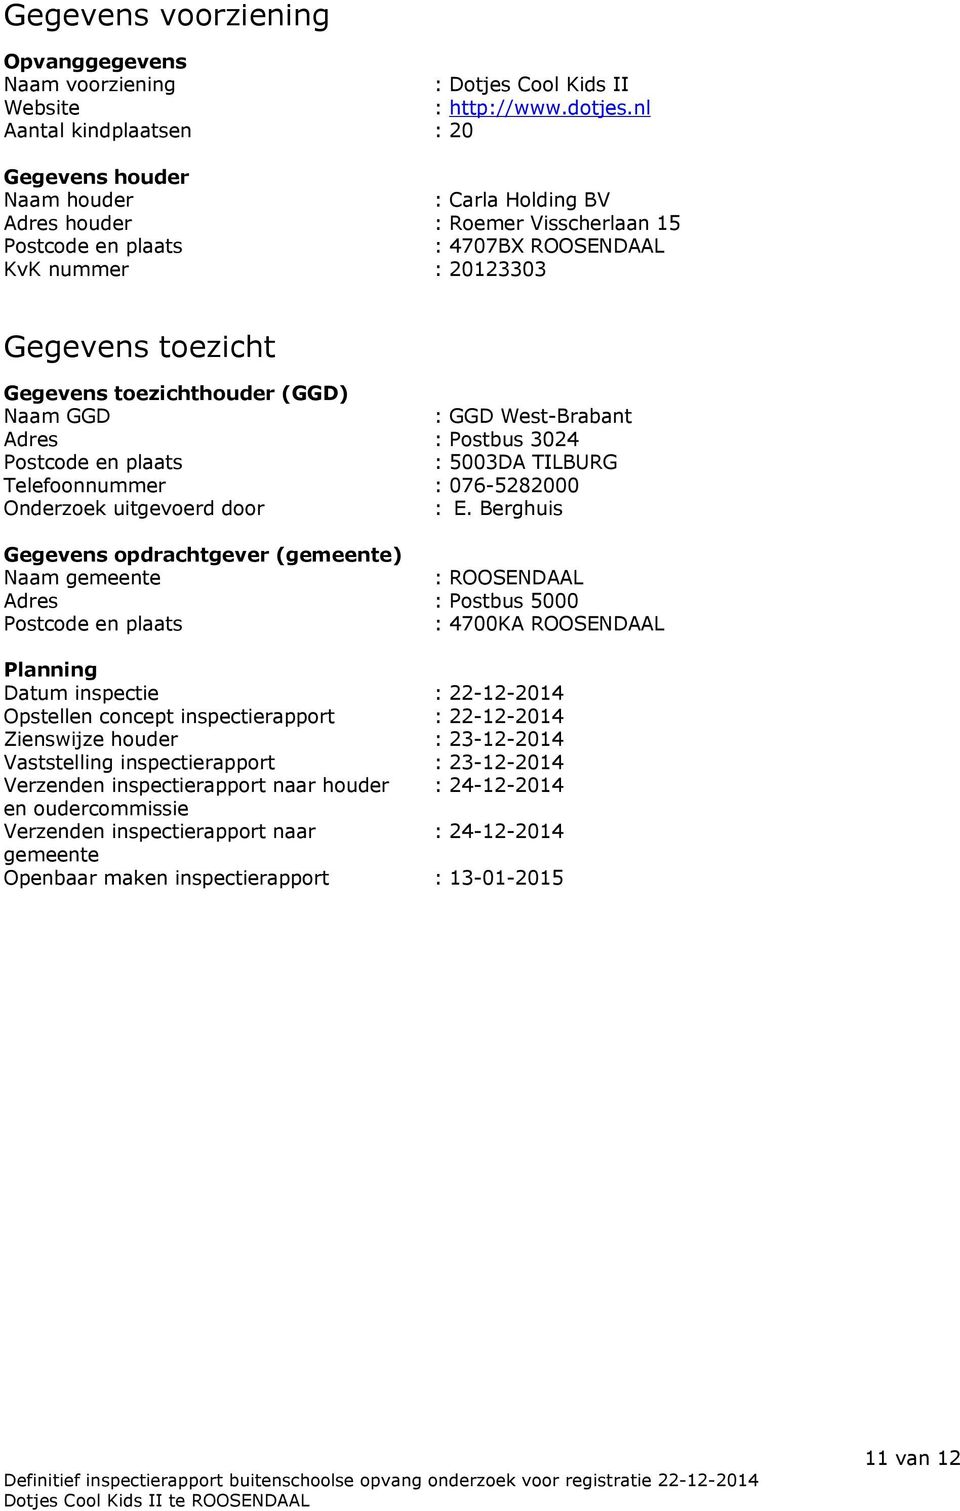 Gegevens toezichthouder (GGD) Naam GGD : GGD West-Brabant Adres : Postbus 3024 Postcode en plaats : 5003DA TILBURG Telefoonnummer : 076-5282000 Onderzoek uitgevoerd door : E.